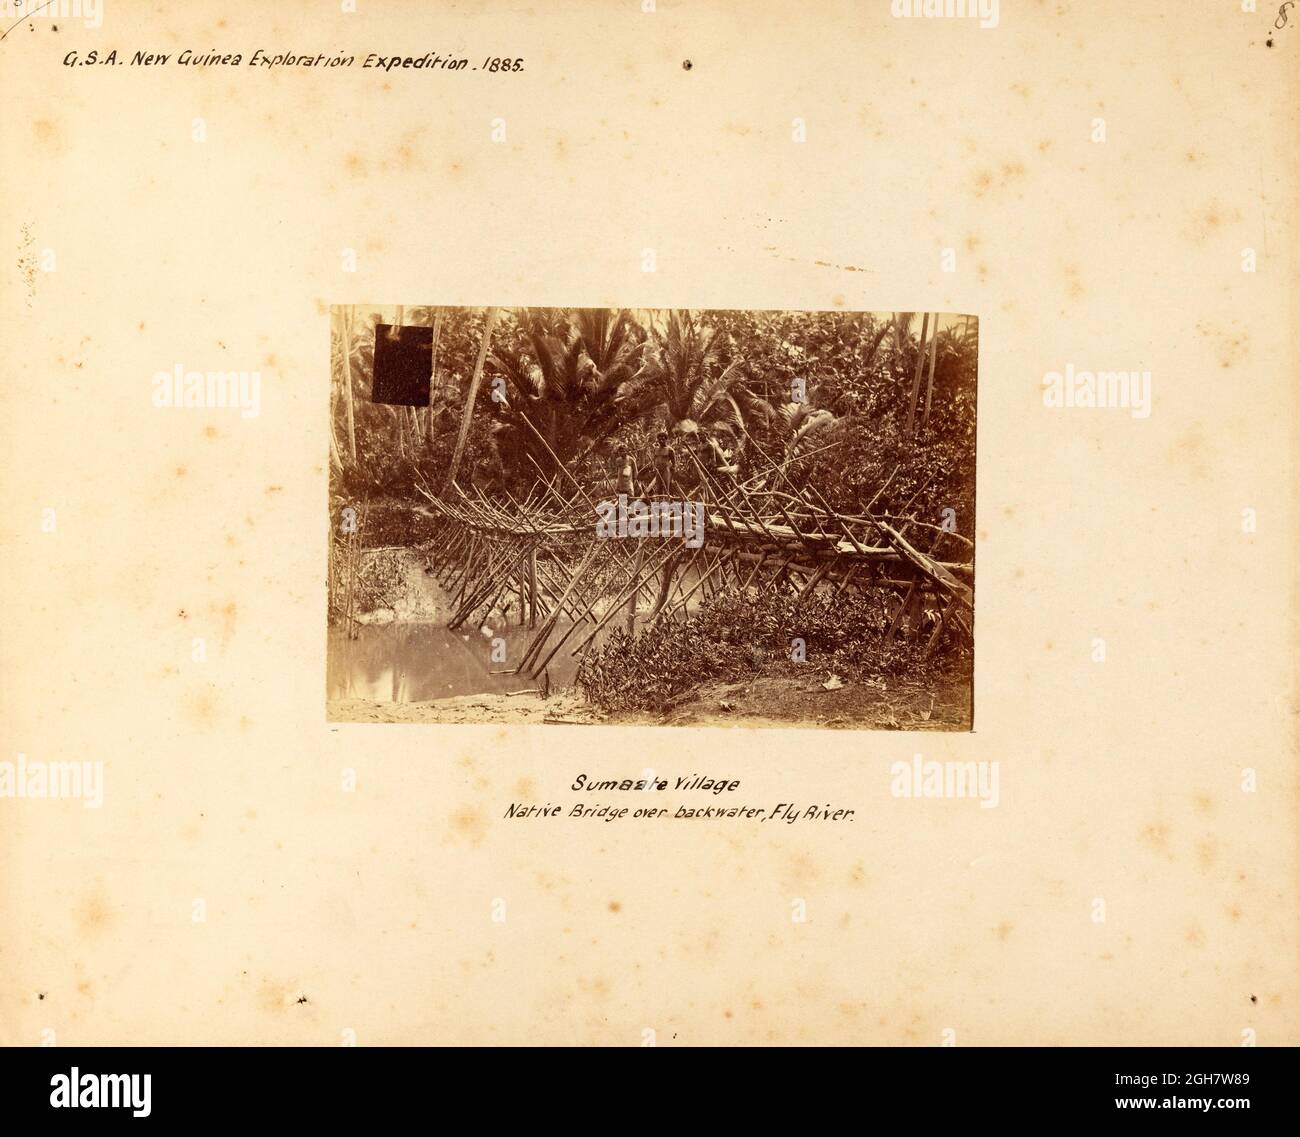 Ureinwohner auf einer Brücke über ein Rückwasser des Fly River in Papua-Neuguinea während der G.S.A. (Geographic Society of Australasia) Neuguinea Exploring Expedition 1885 Stockfoto